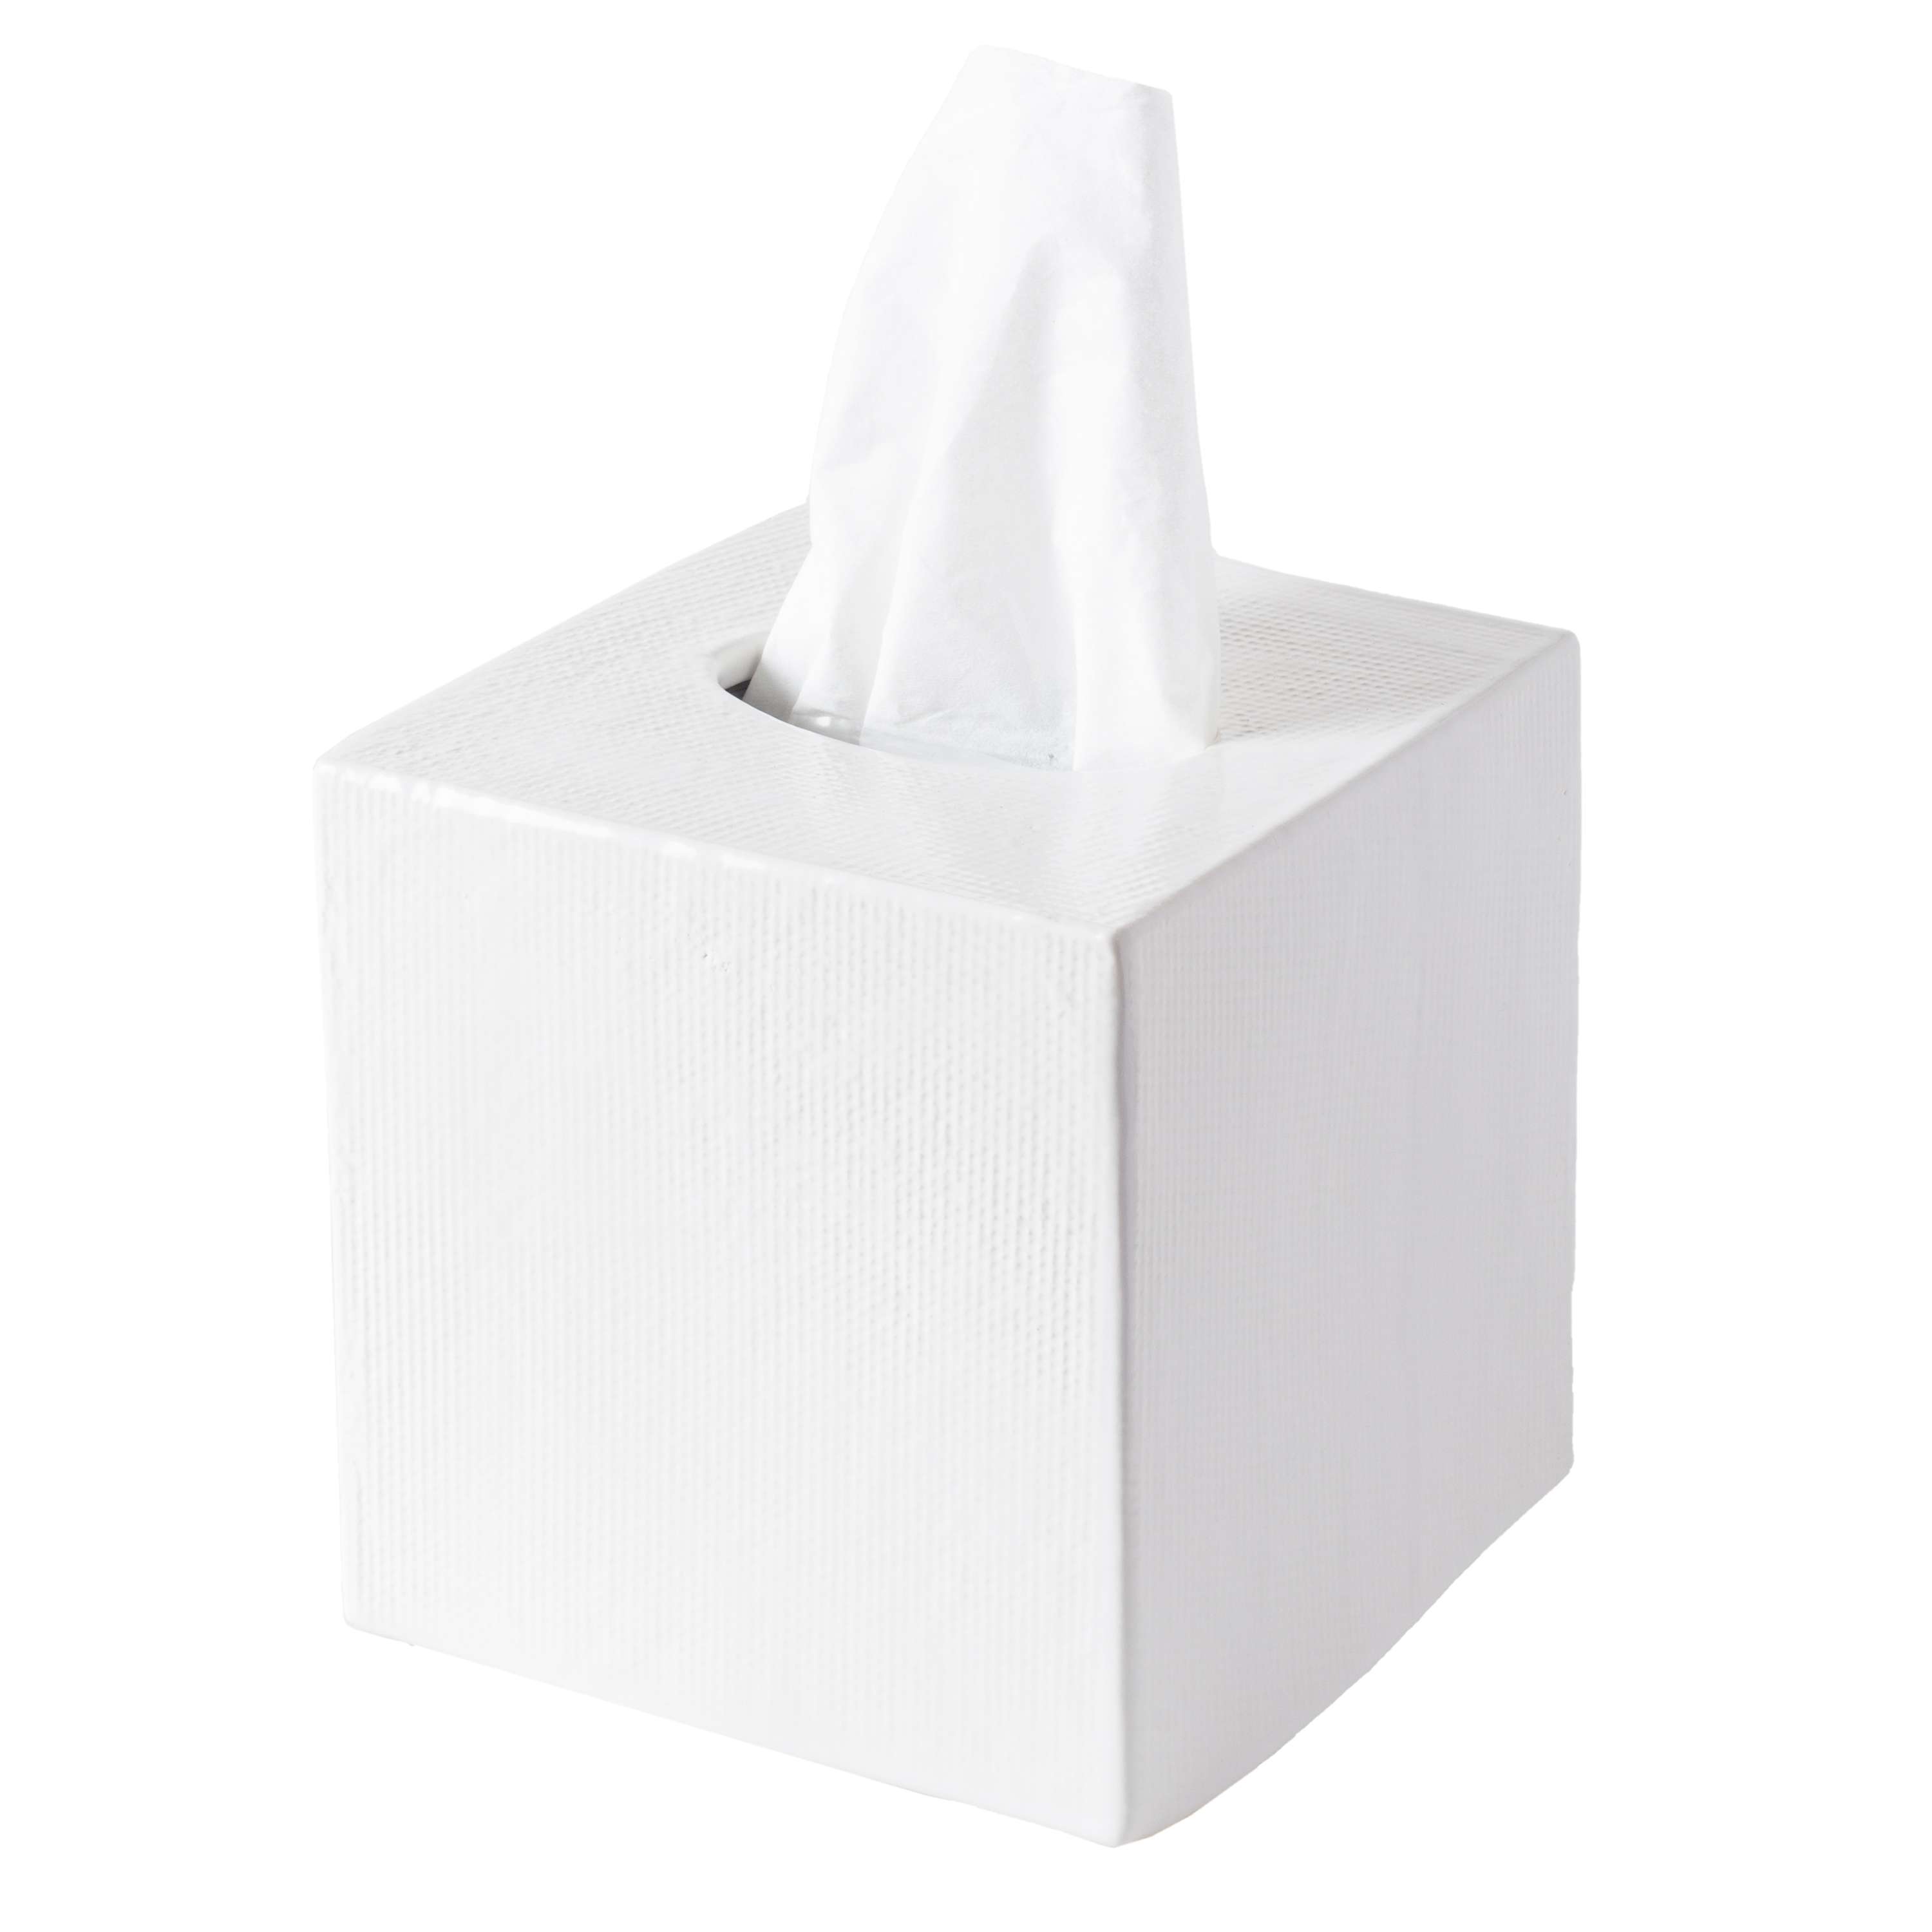 burlap tissue box cover